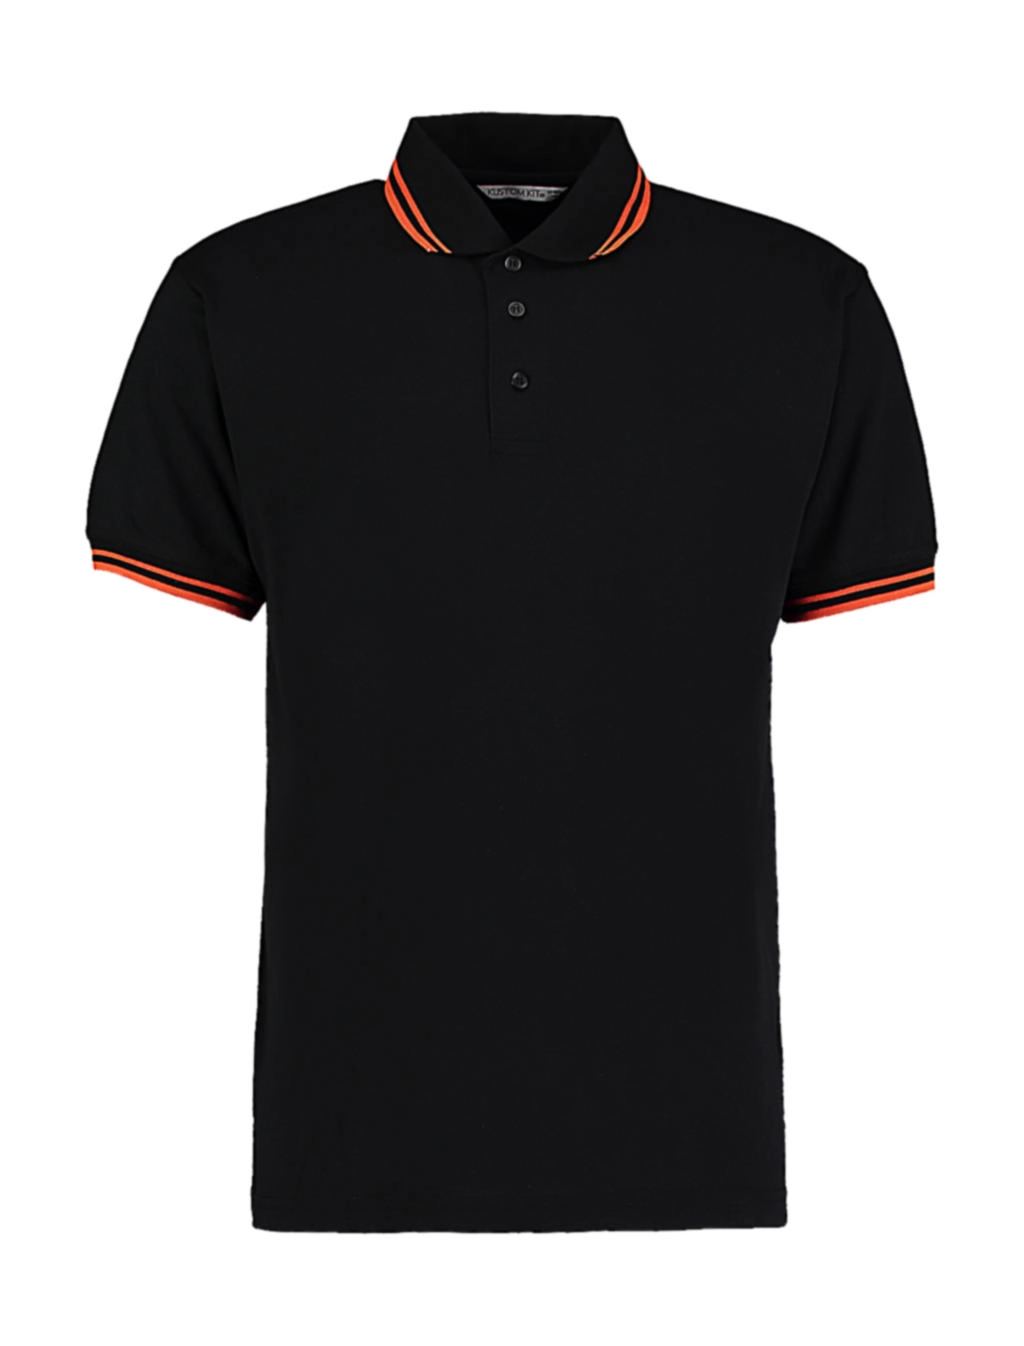 Classic Fit Tipped Collar Polo zum Besticken und Bedrucken in der Farbe Black/Orange mit Ihren Logo, Schriftzug oder Motiv.